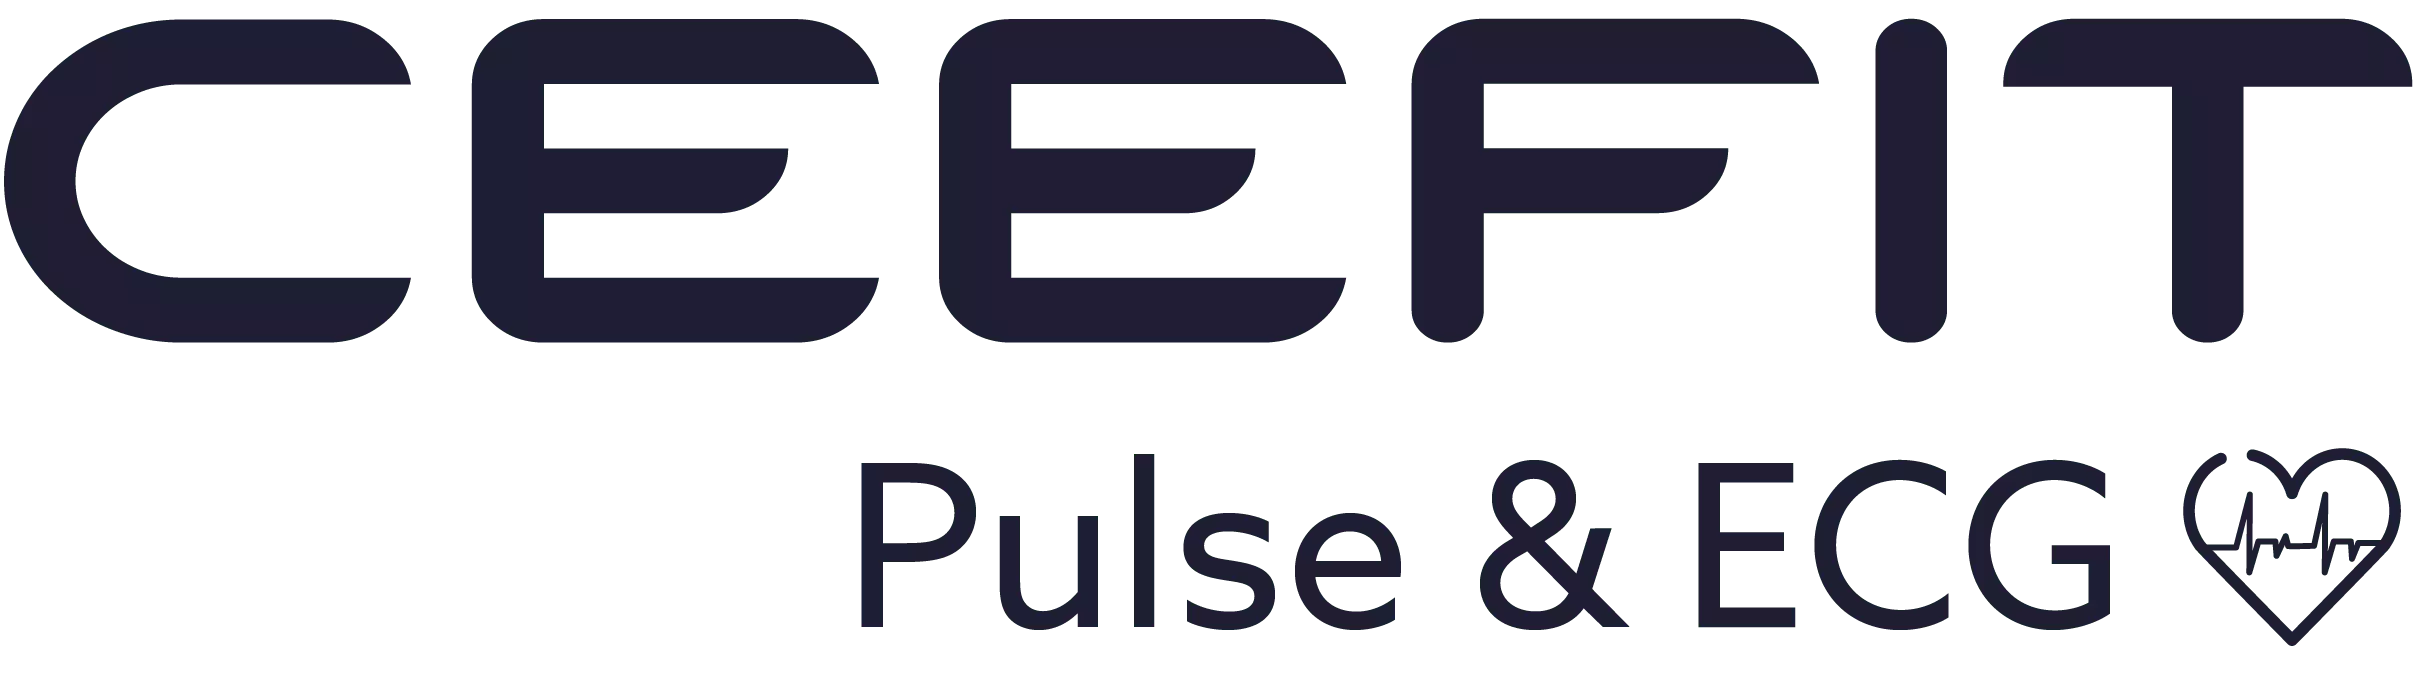 Ceefit-pulse